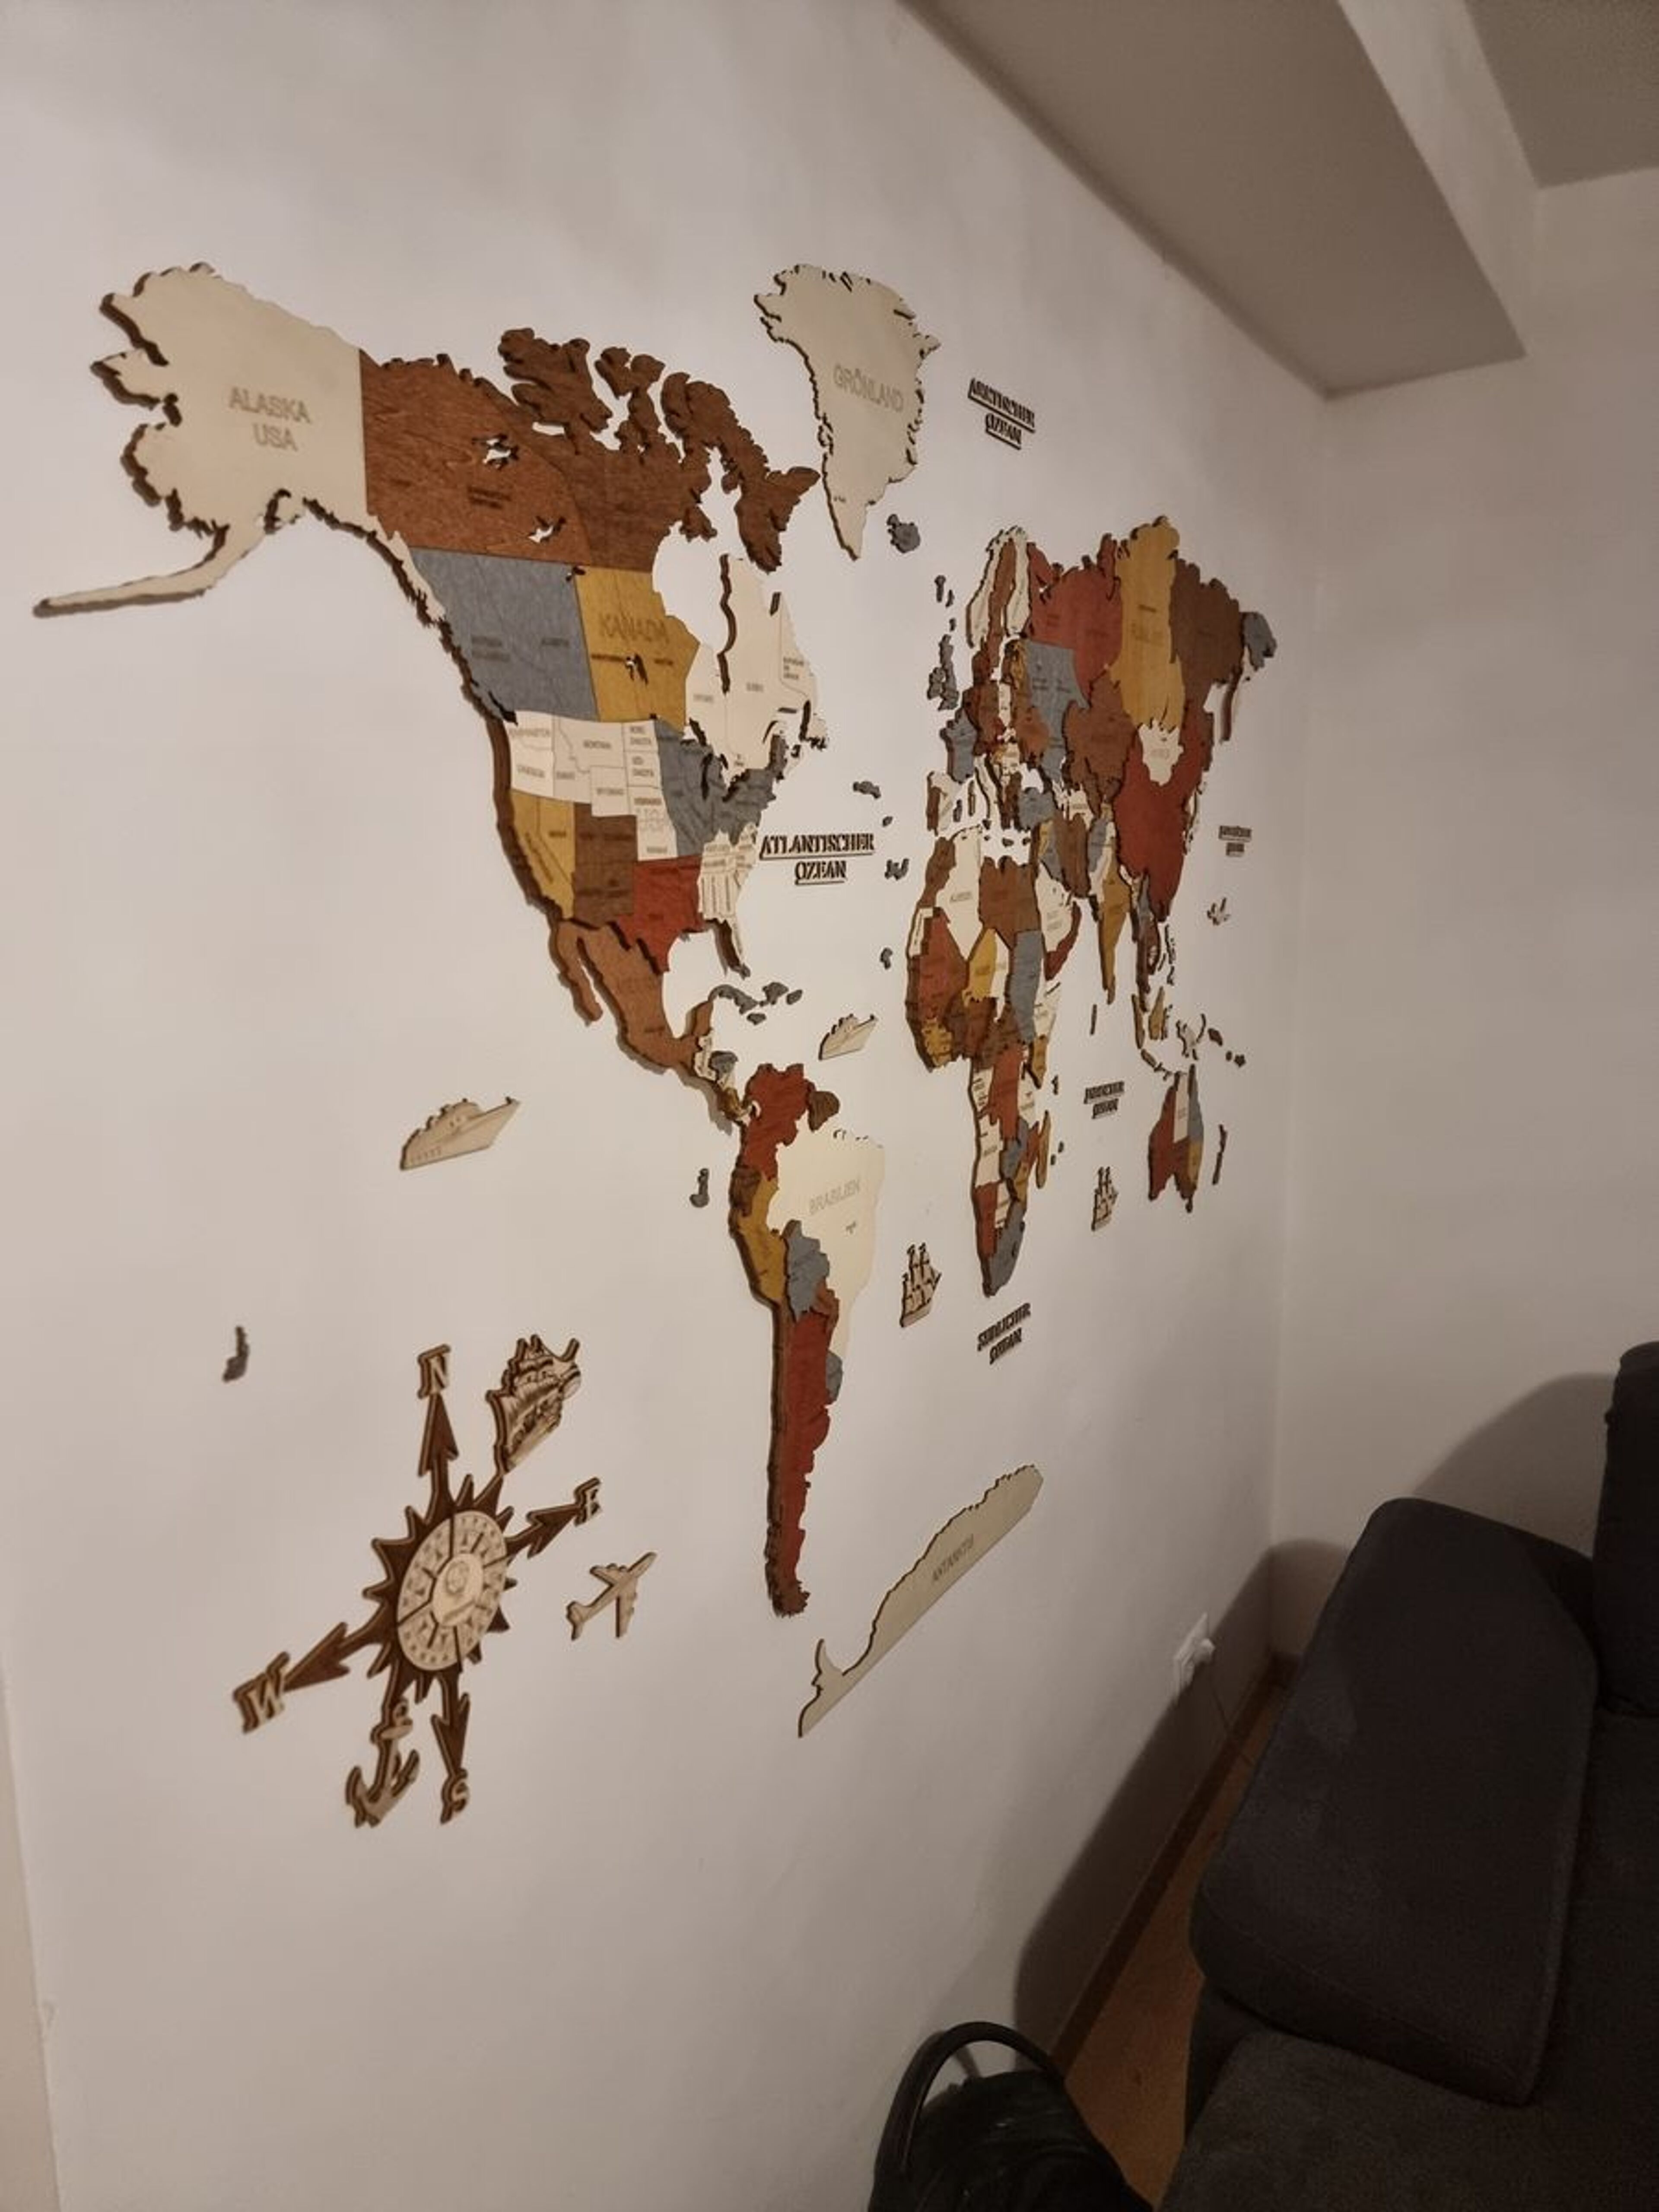 Reseña de Mapa del mundo de madera - imagen de Daniel V.